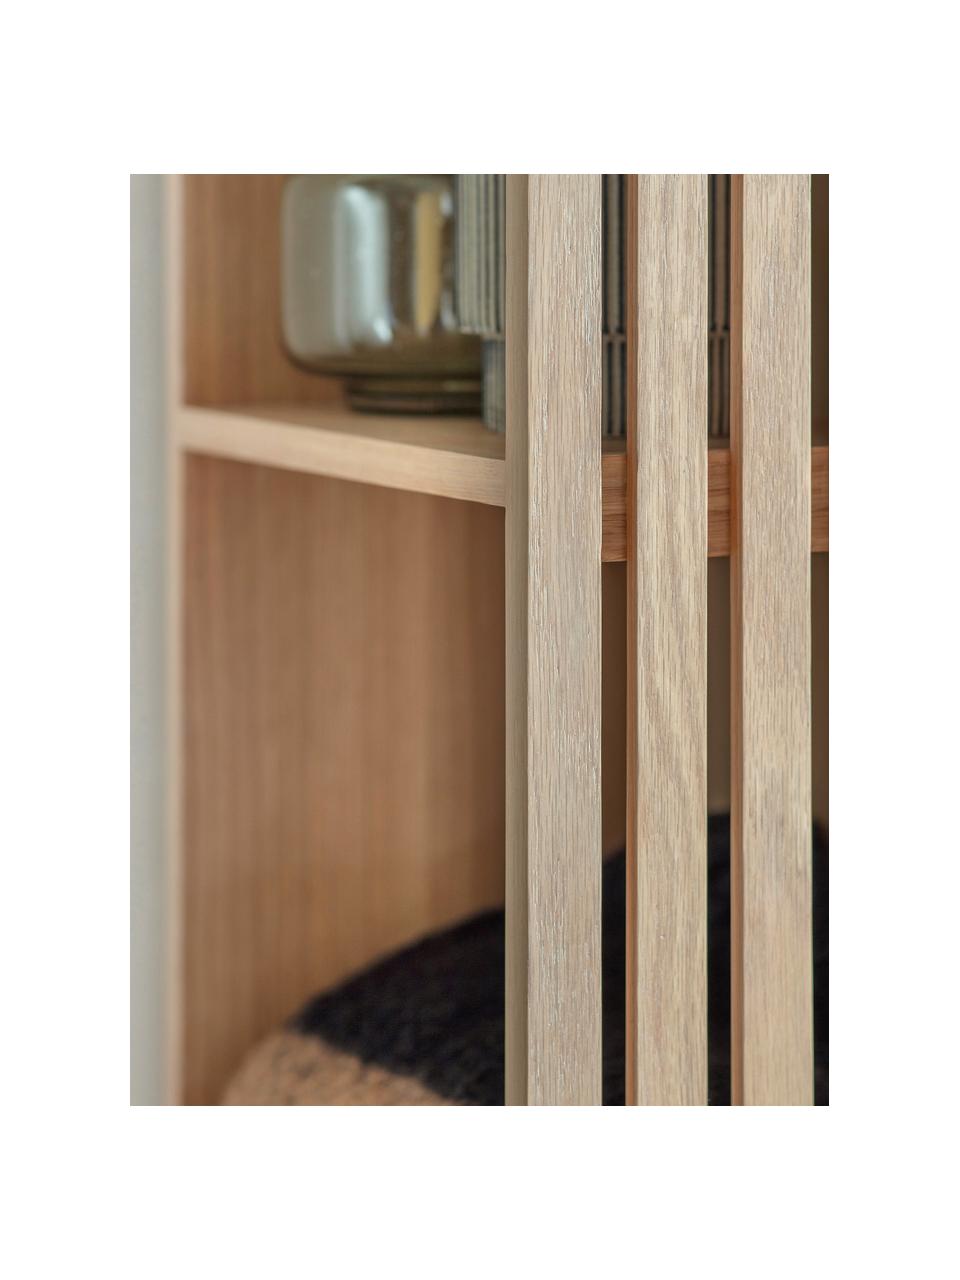 Otwarta szafa z drewna dębowego Okayama, Korpus: drewno dębowe, płyta pilś, Drewno dębowe, czarny, S 80 x W 175 cm